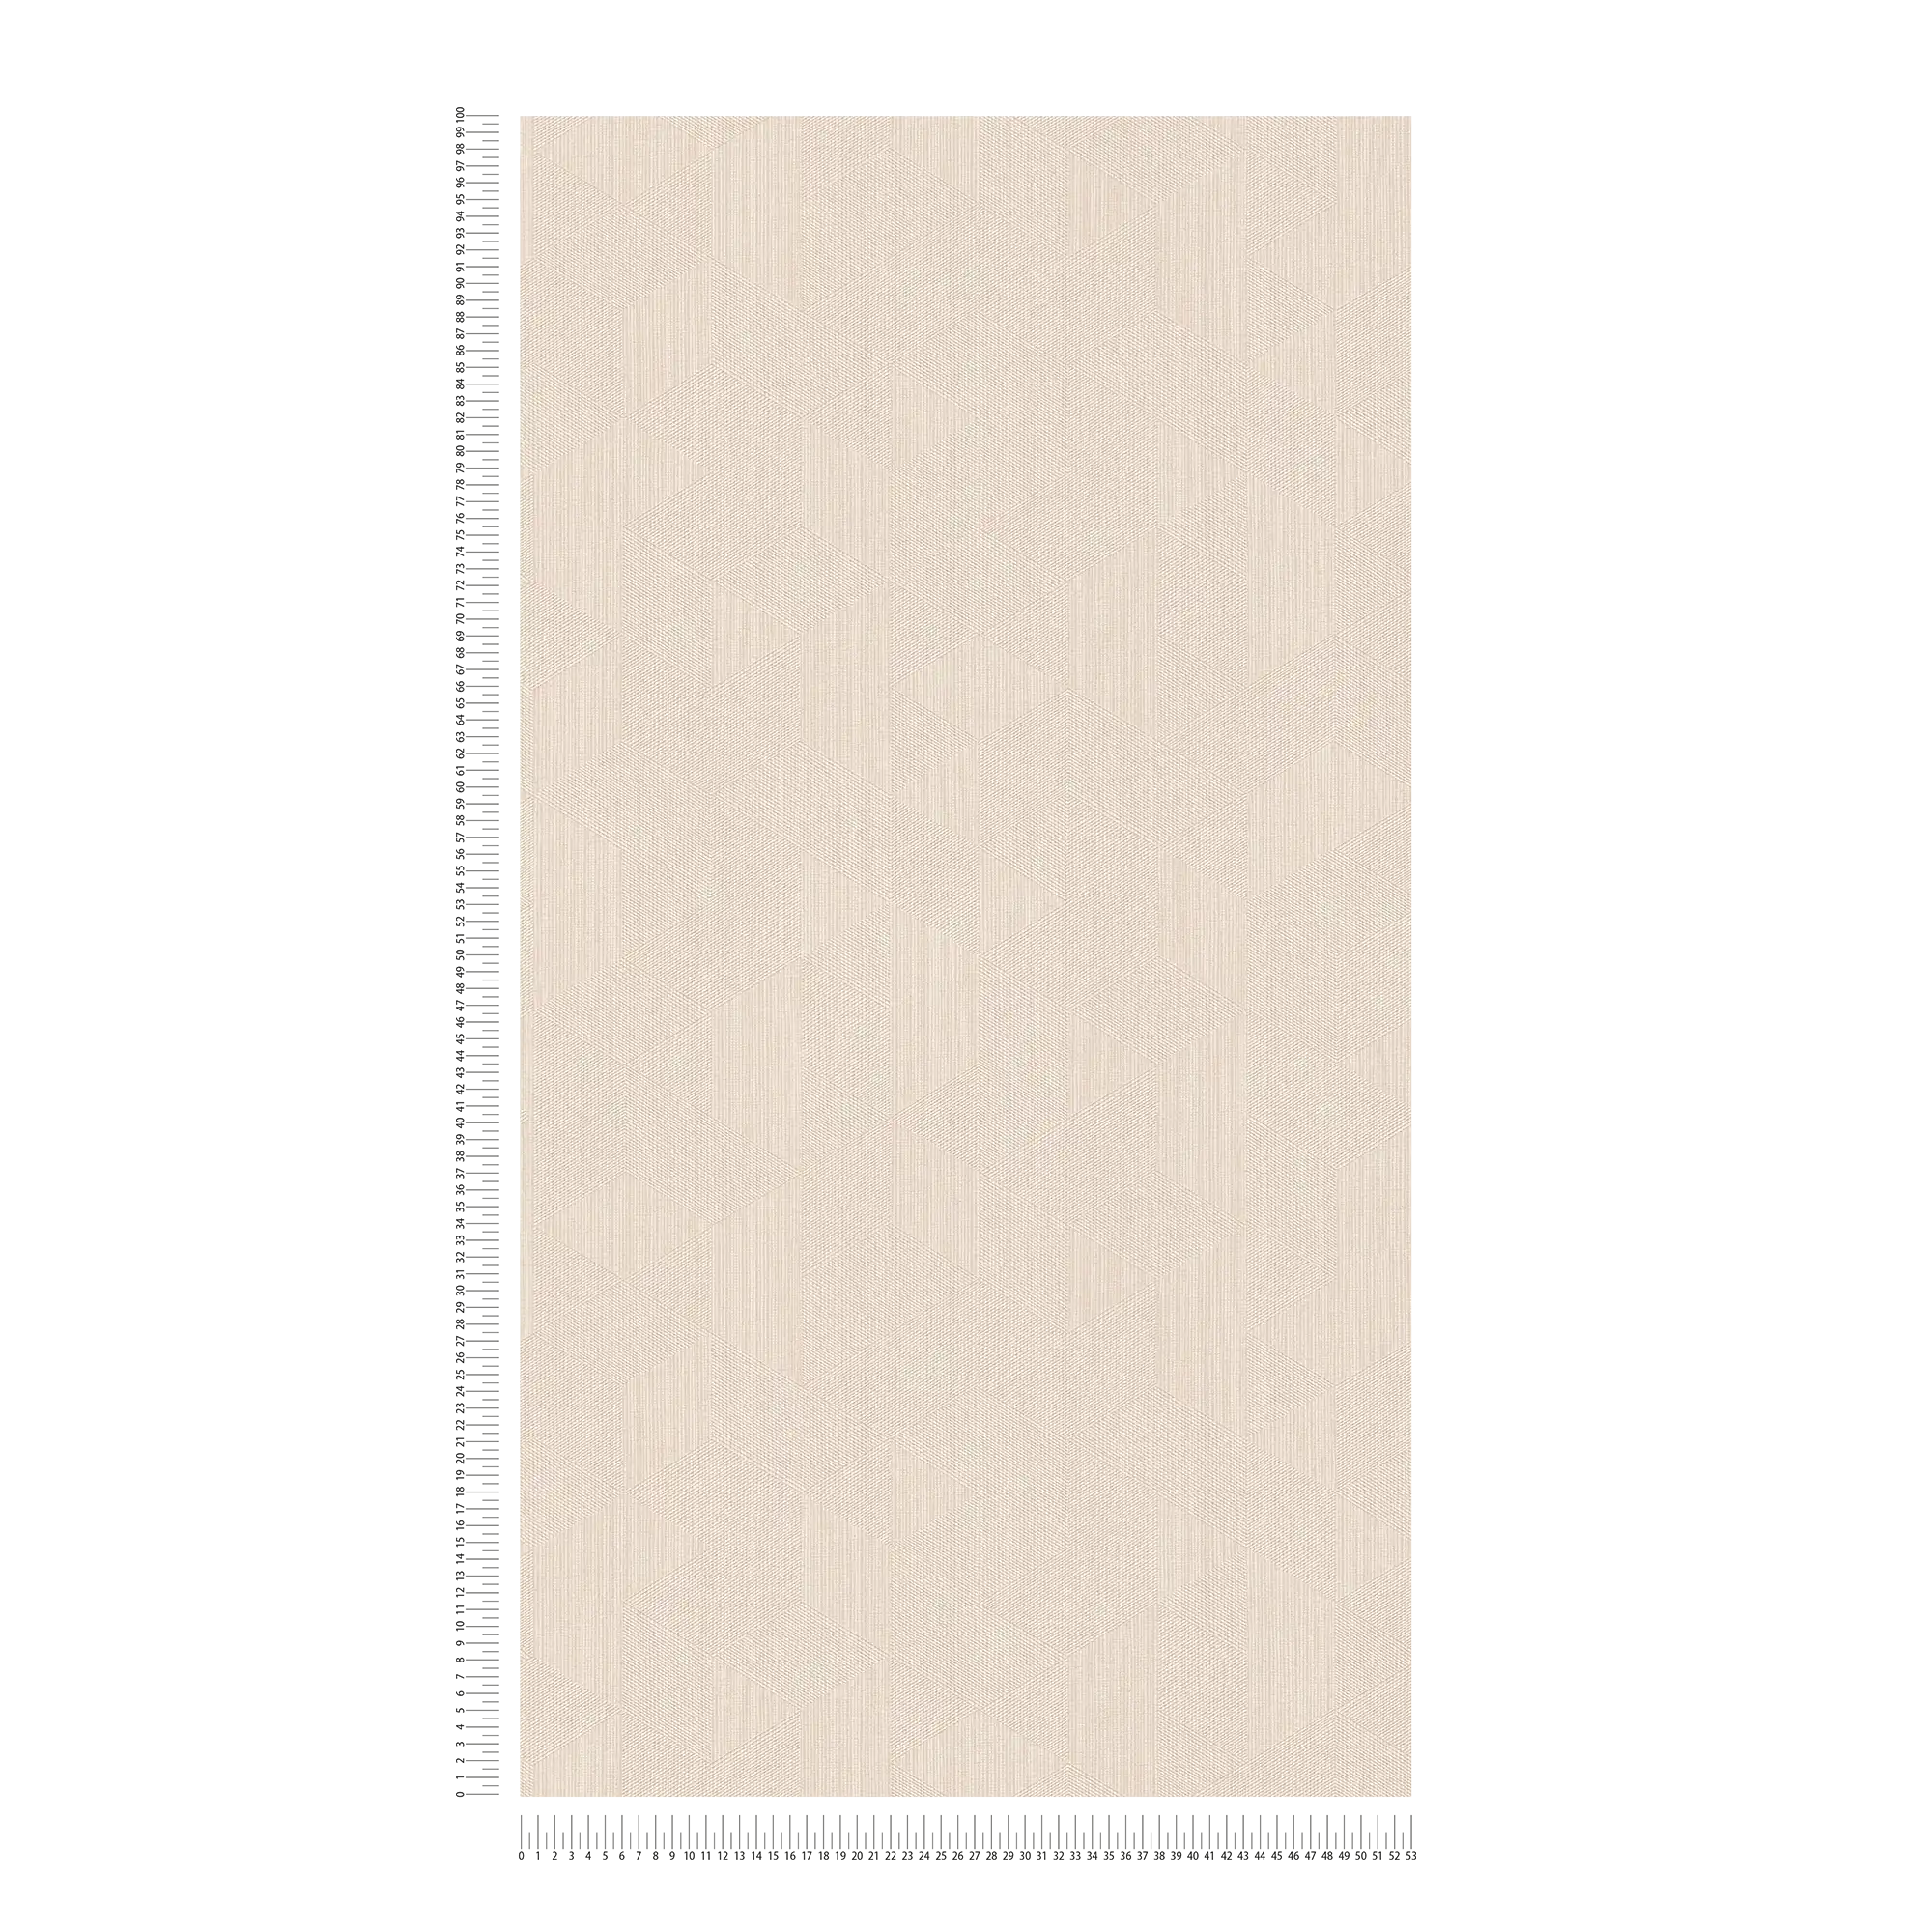             Papel pintado de color beige claro no tejido con motivos gráficos y efecto de brillo - beige
        